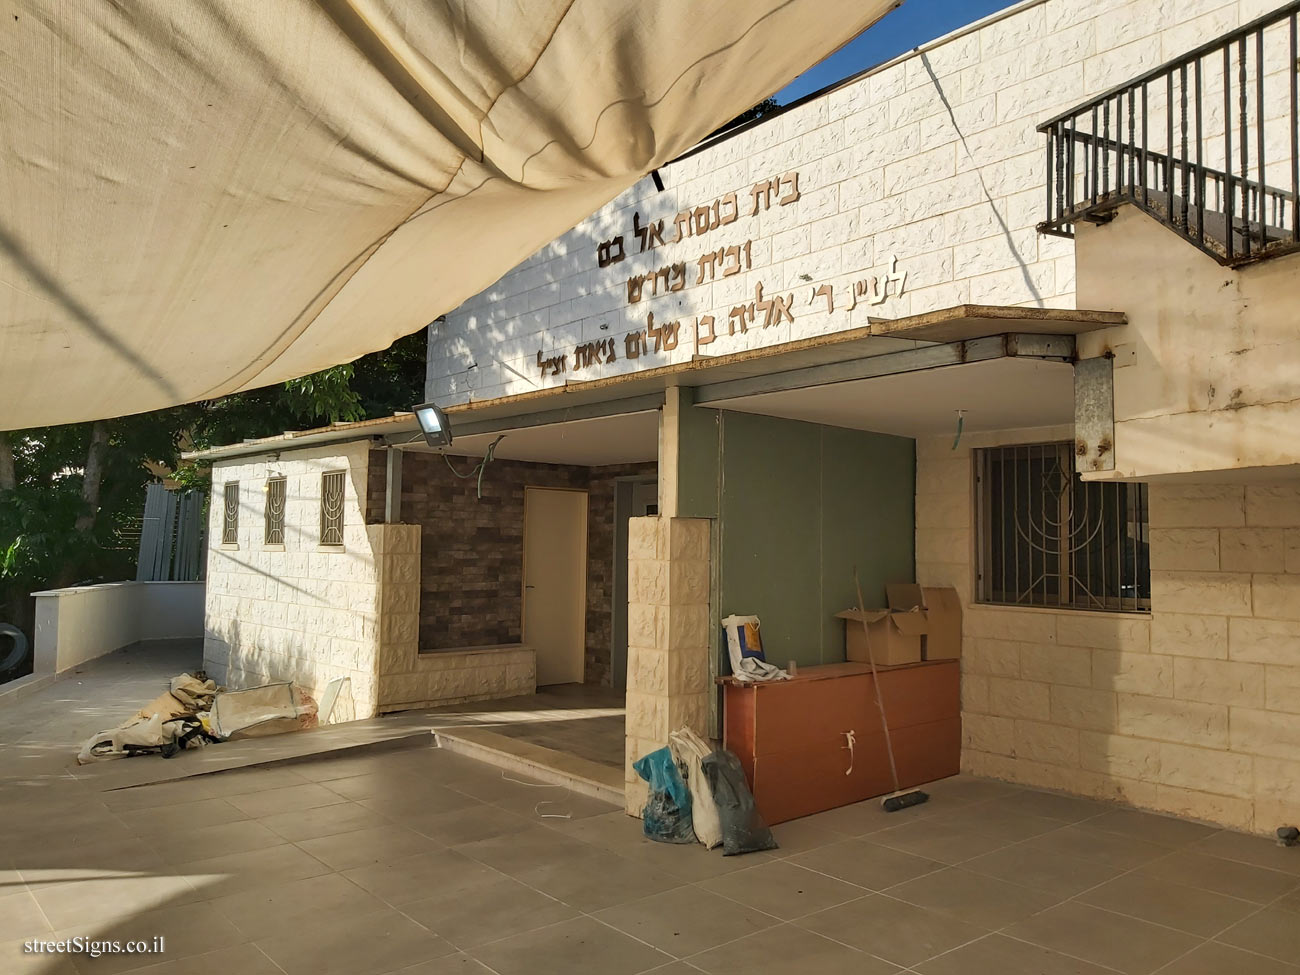 Rosh Haayin - Heritage Sites in Israel - Al-boom "Synagogue" - Rambam St 21, Rosh Haayin, Israel